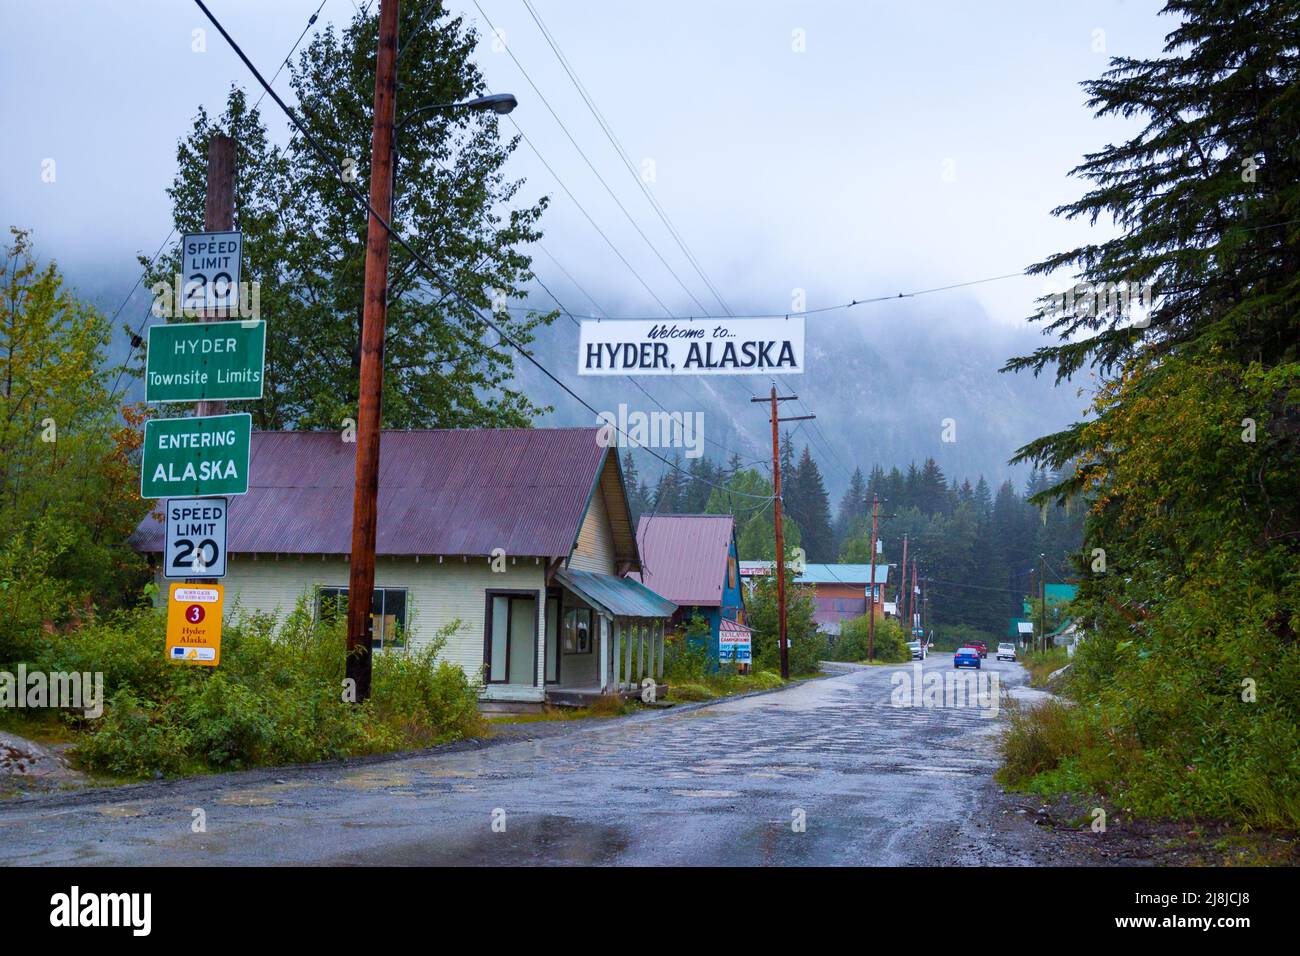 Hyder, la ciudad más oriental del estado de Alaska, EE.UU., es la puerta de entrada a la zona de observación de osos en el sitio de observación de la fauna y flora de Fish Creek. Foto de stock